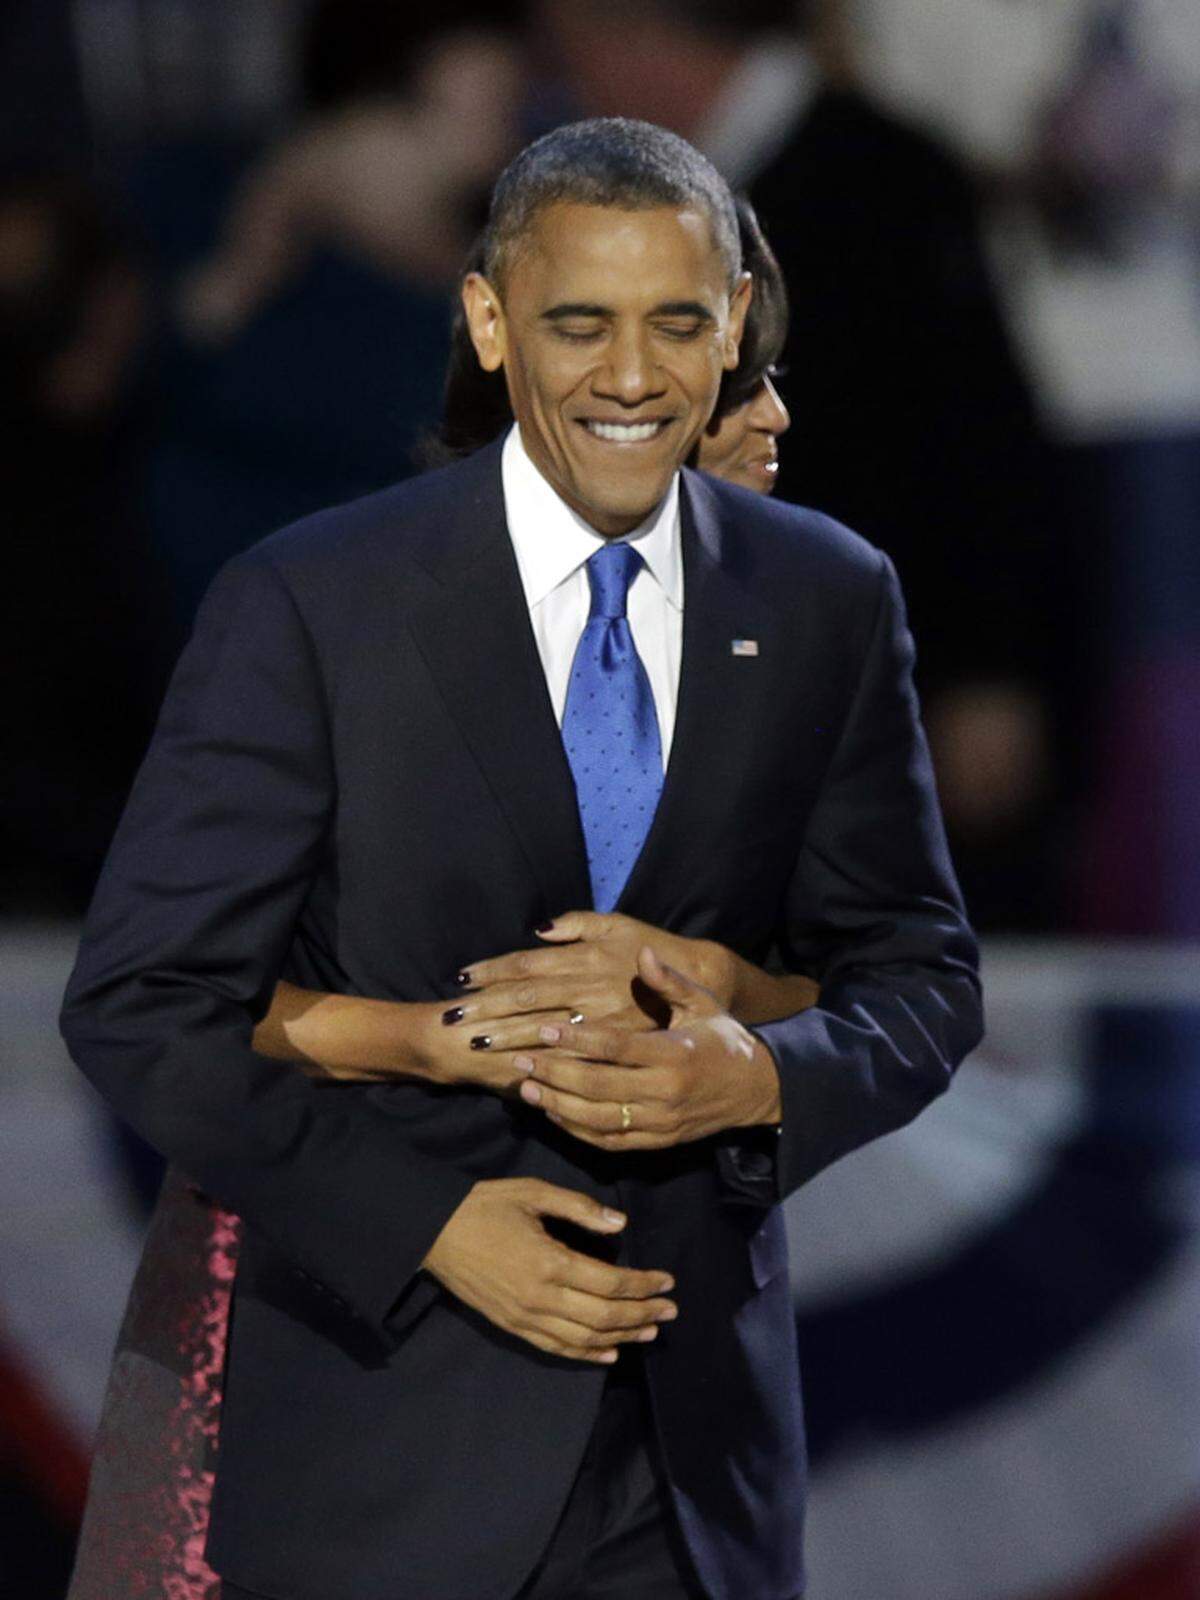 Obama an "die Frau, die sich vor 20 Jahren entschlossen hat, mich zu heiraten": "Michelle, ich habe Dich niemals mehr geliebt!"